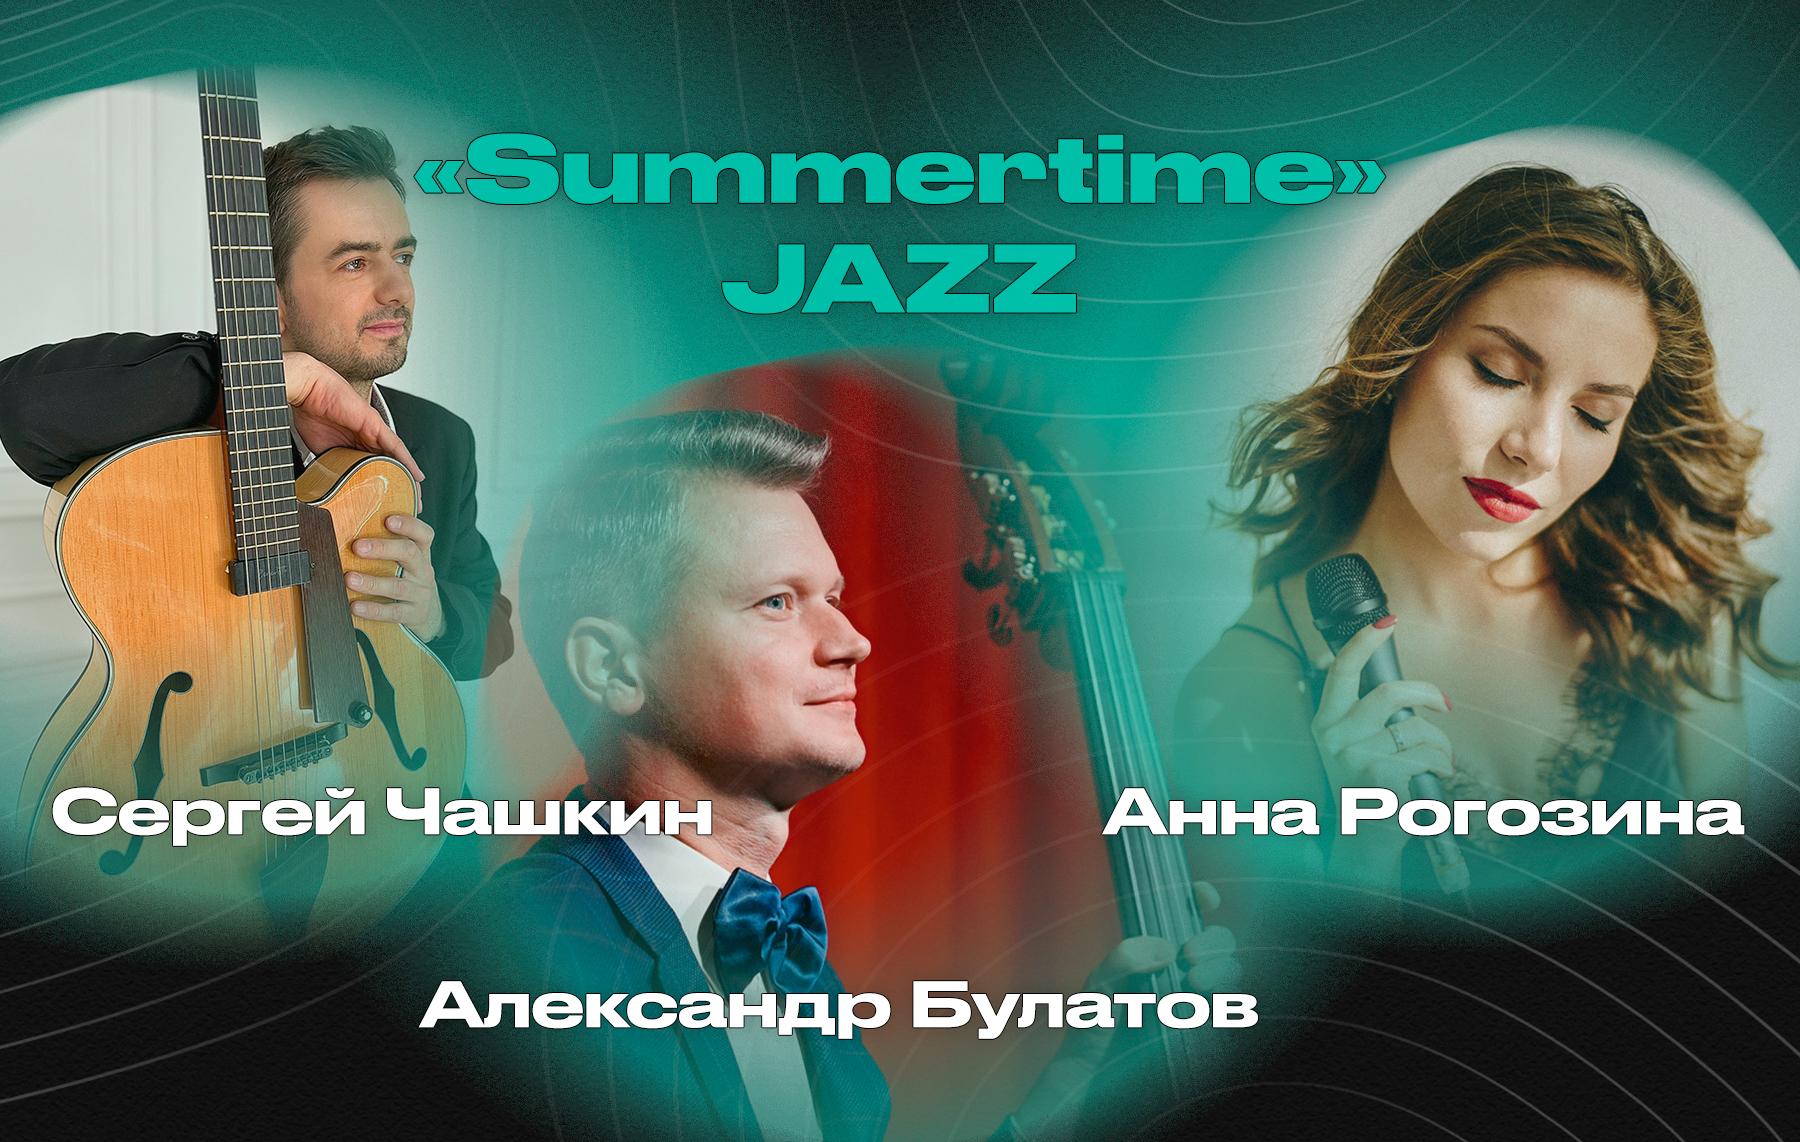 «Summertime» JAZZ – Сергей Чашкин, Александр Булатов и Анна Рогозина